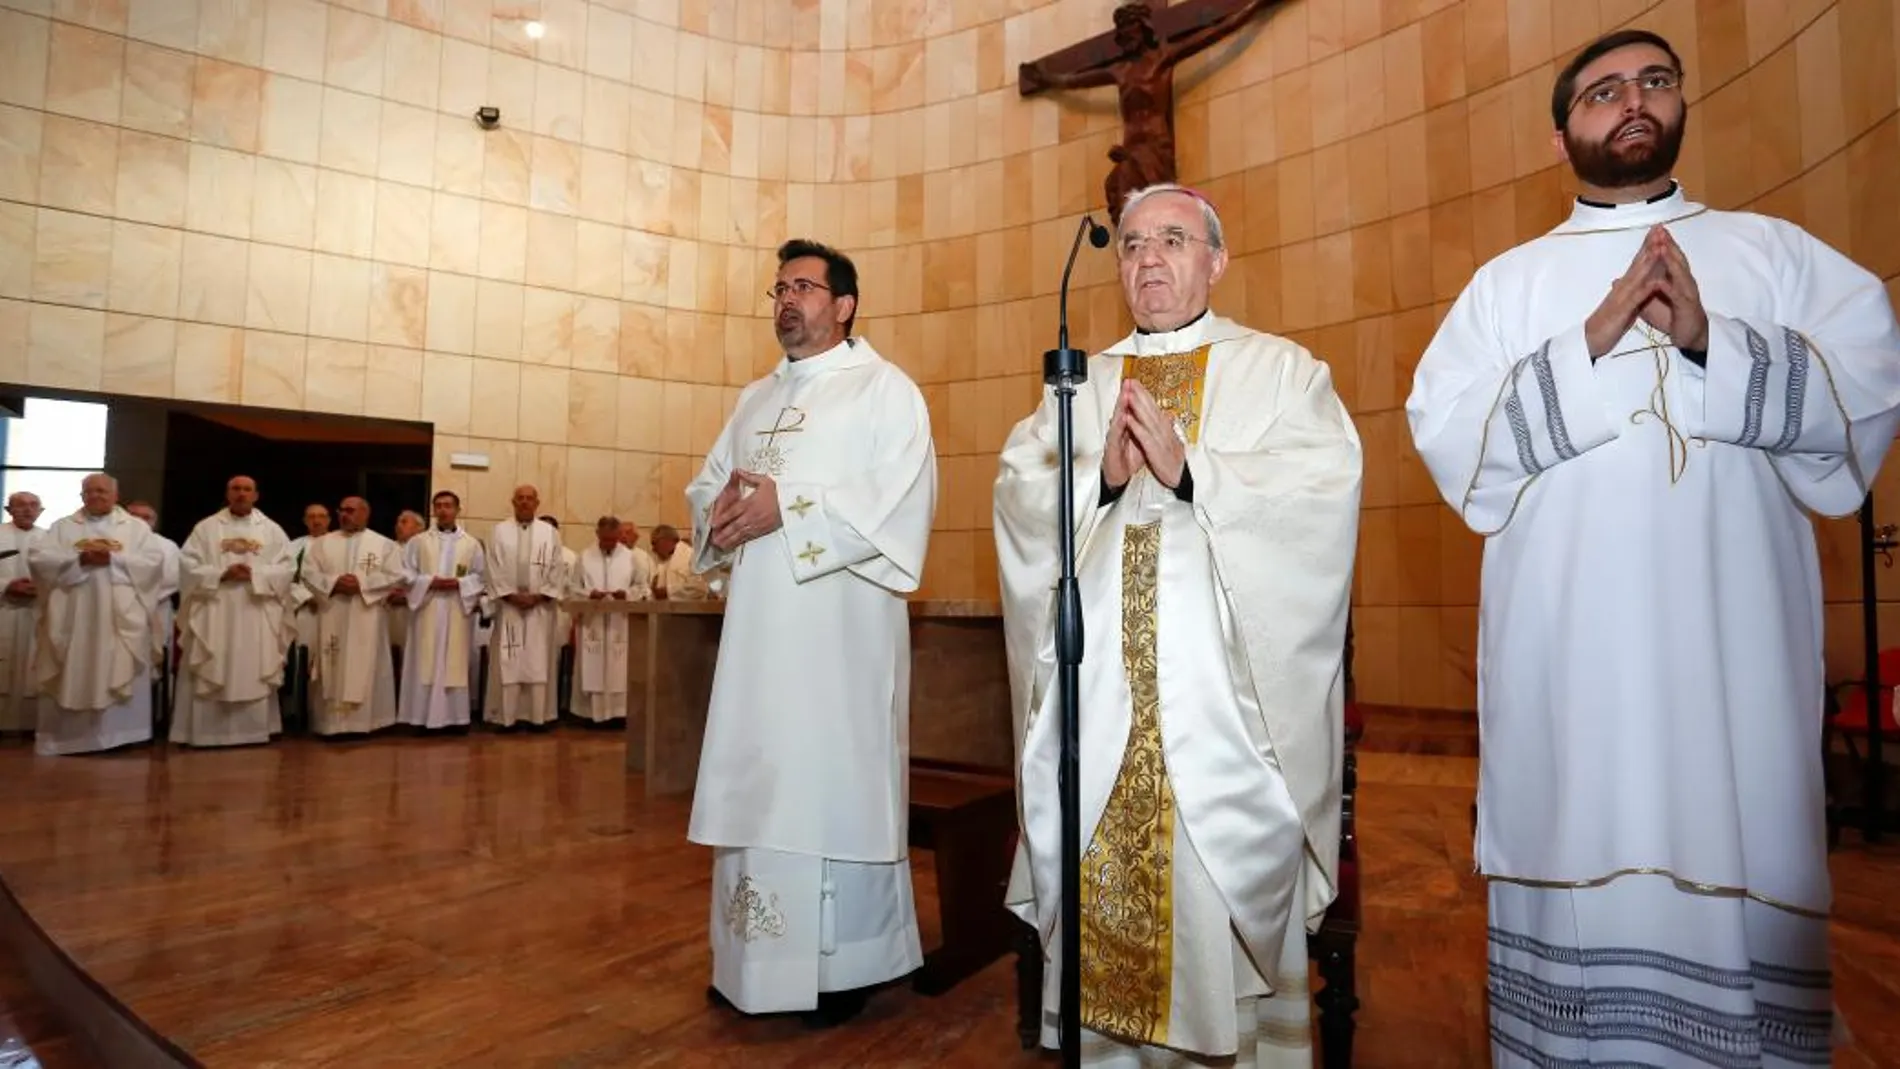 El nuncio apostólico, Renzo Fratini, preside los actos de consagración del templo y bendición del altar del nuevo centro parroquial Nuestra Señora del Rosario de León